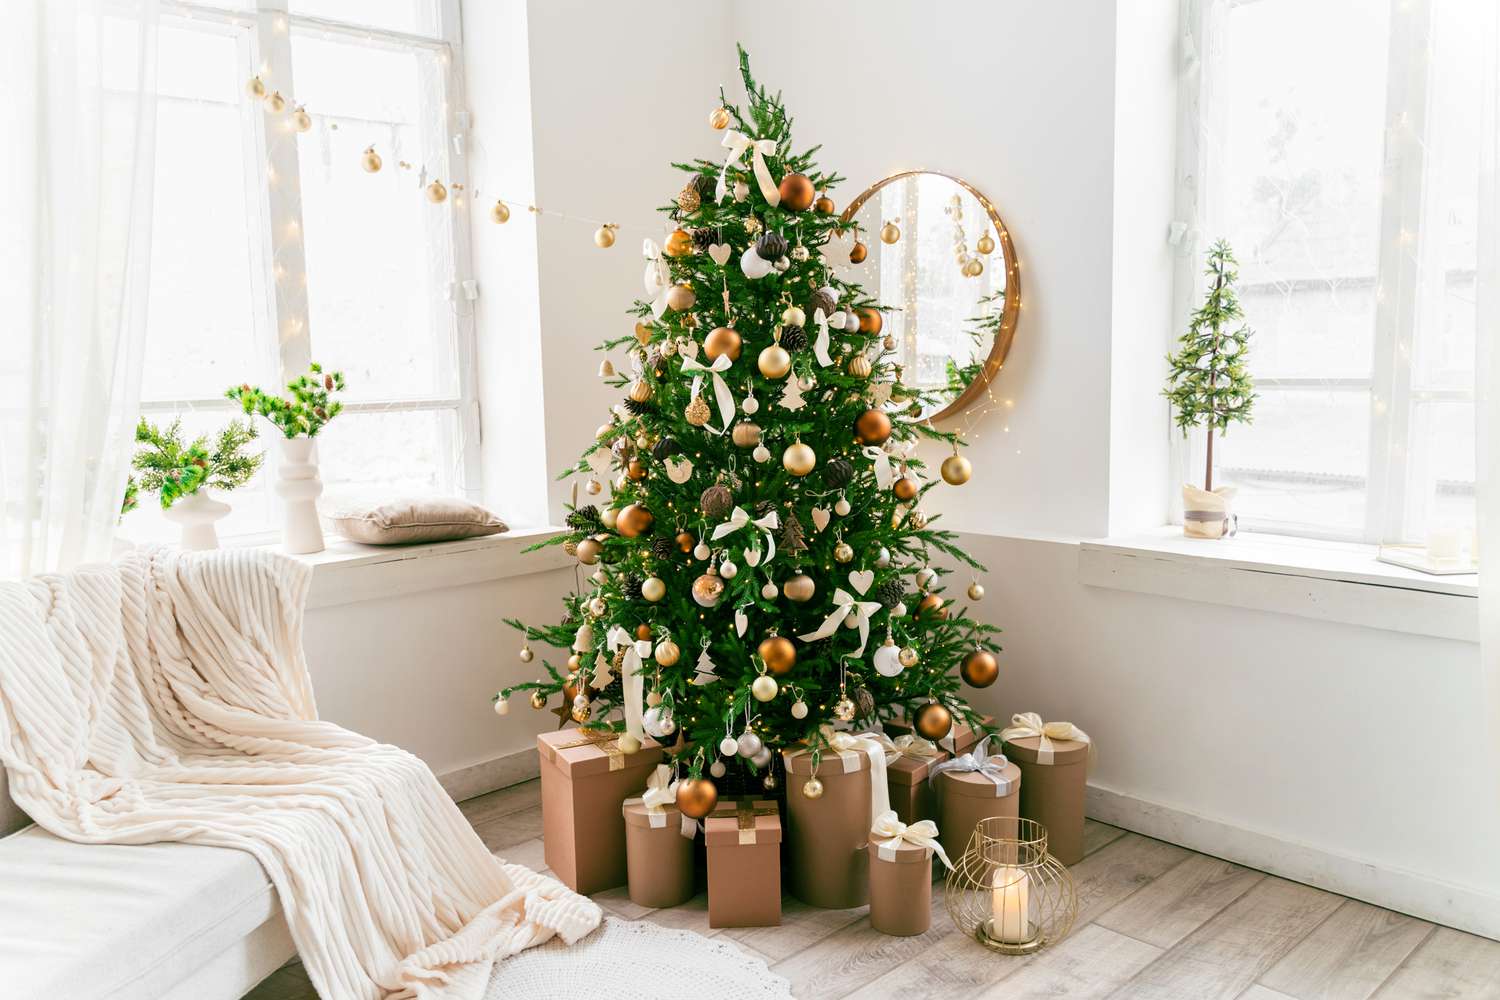 Sala de estar festiva com árvore decorada e presentes embaixo.